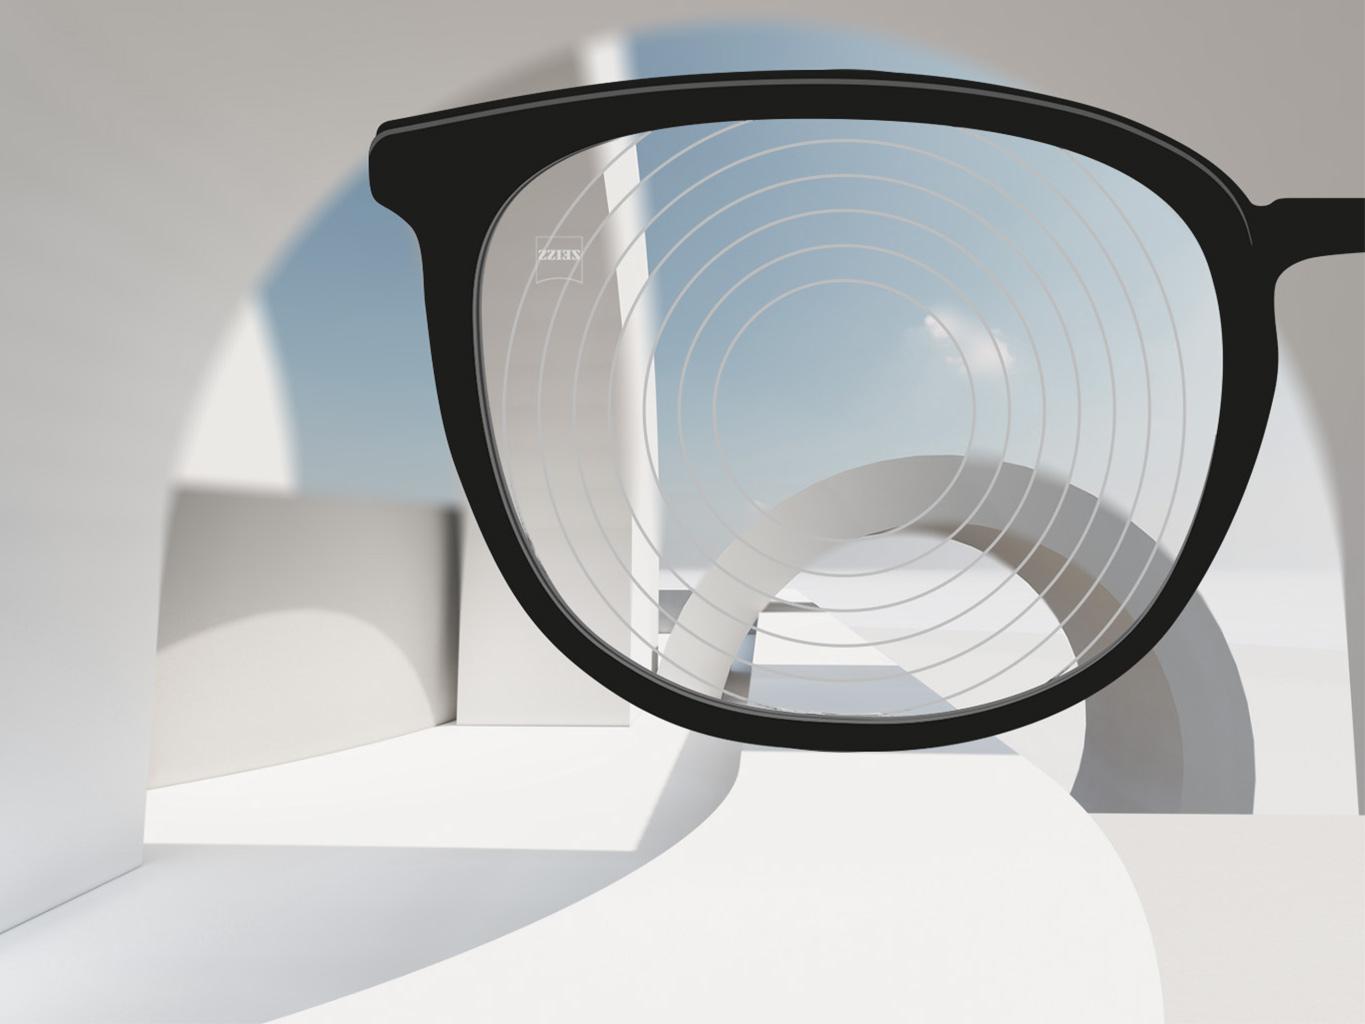 Imagen en primer plano de las lentes de control de la miopía de ZEISS, con montura de gafas negra y círculos concéntricos en la superficie de la lente.